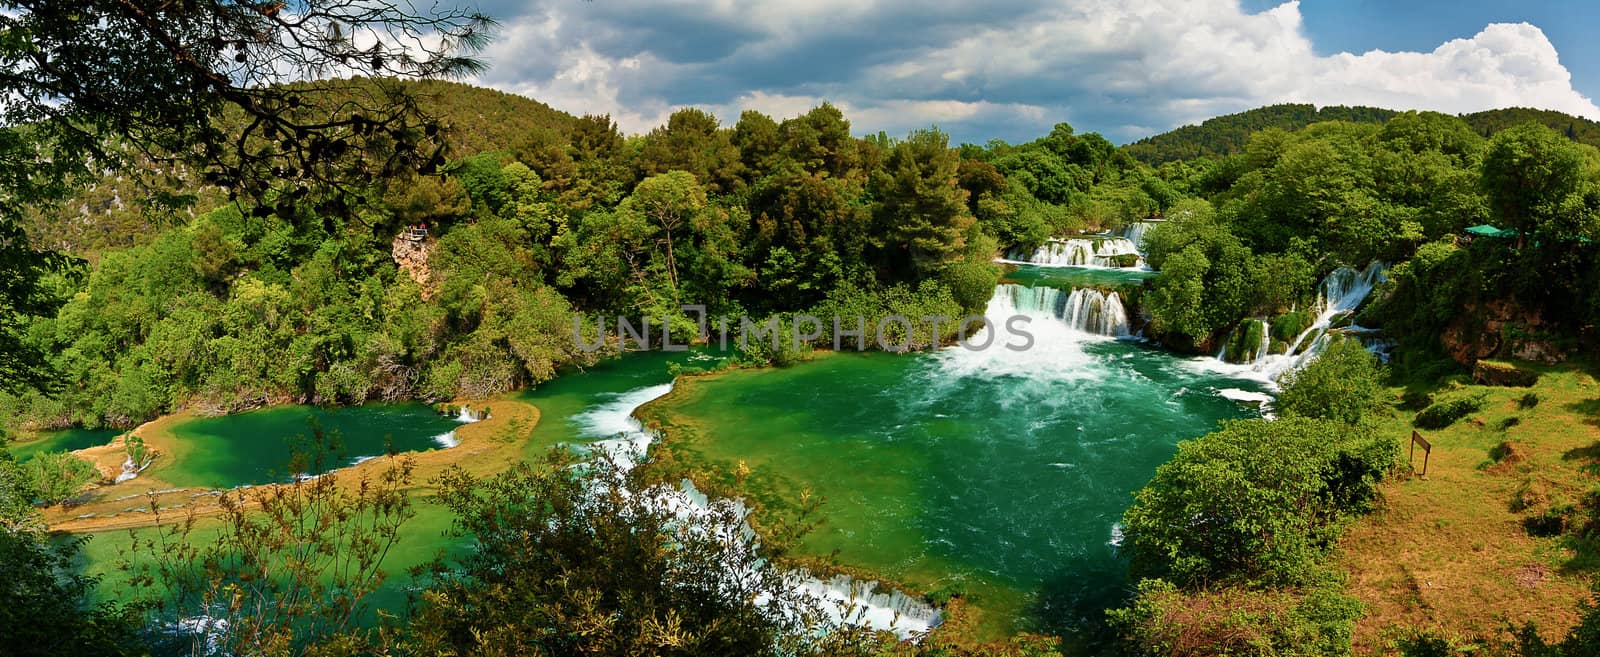 Panoramic HDR photo of waterfalls in Krka National Park in Croatia.